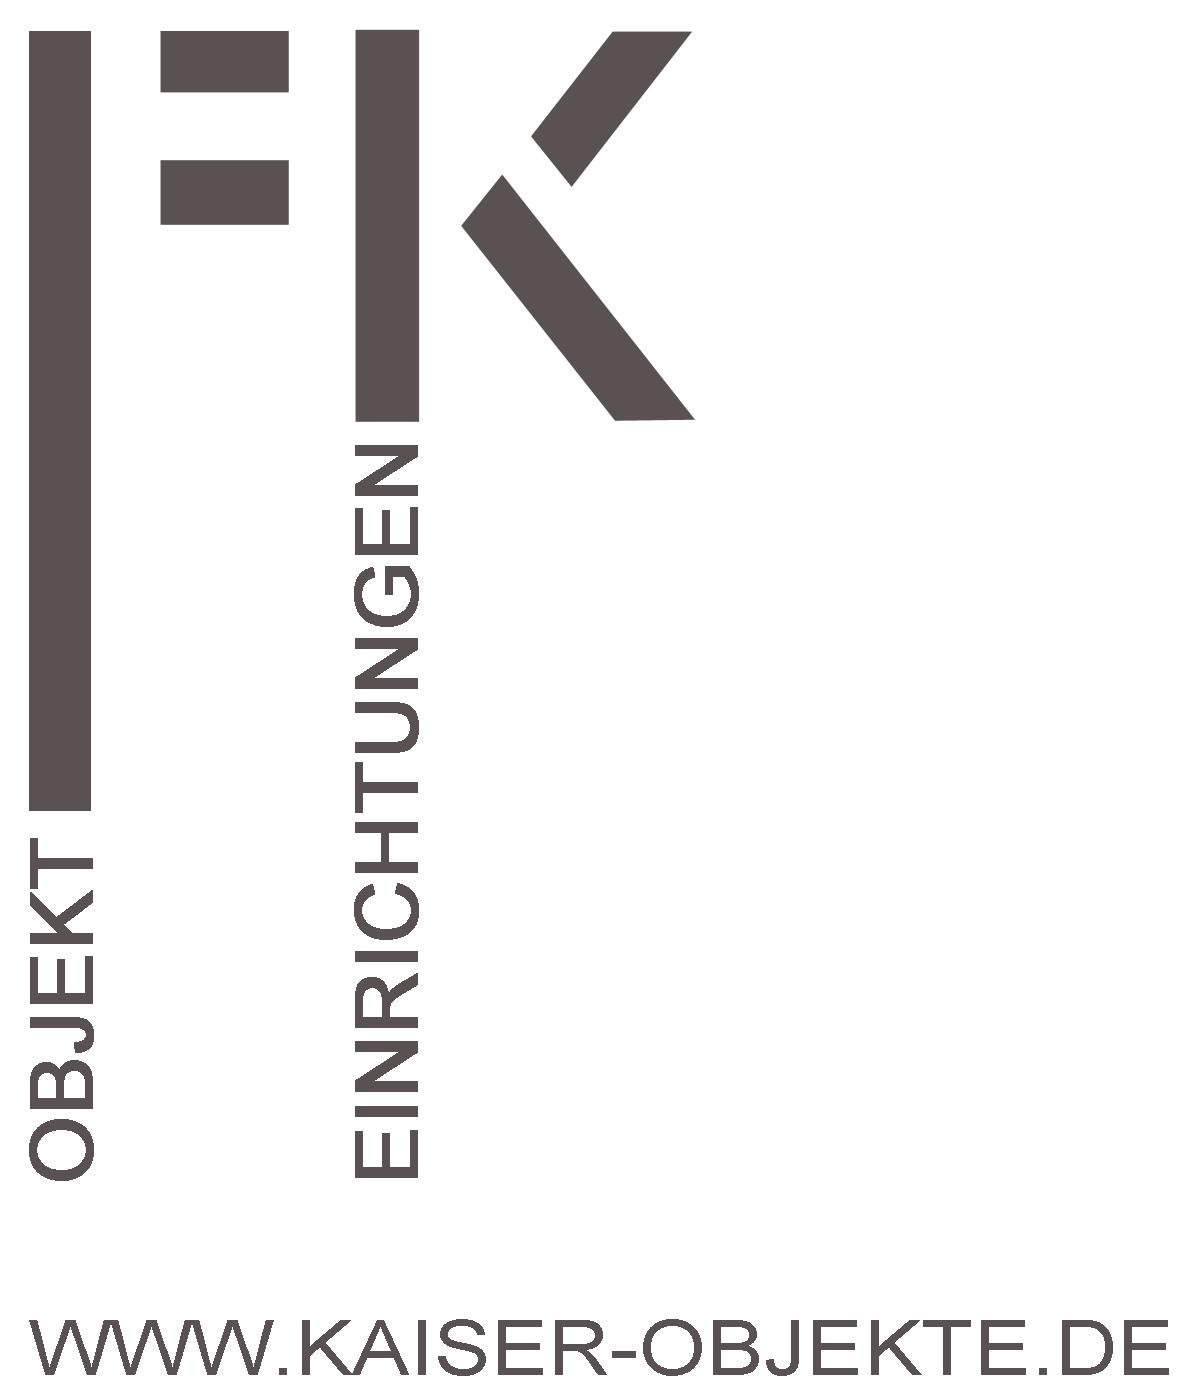 Logo Kaiser Objekteinrichtung Berlin, ein Skizze zu einem Ladenbau Projekt inklusive des Kaiser Objekt Logos.